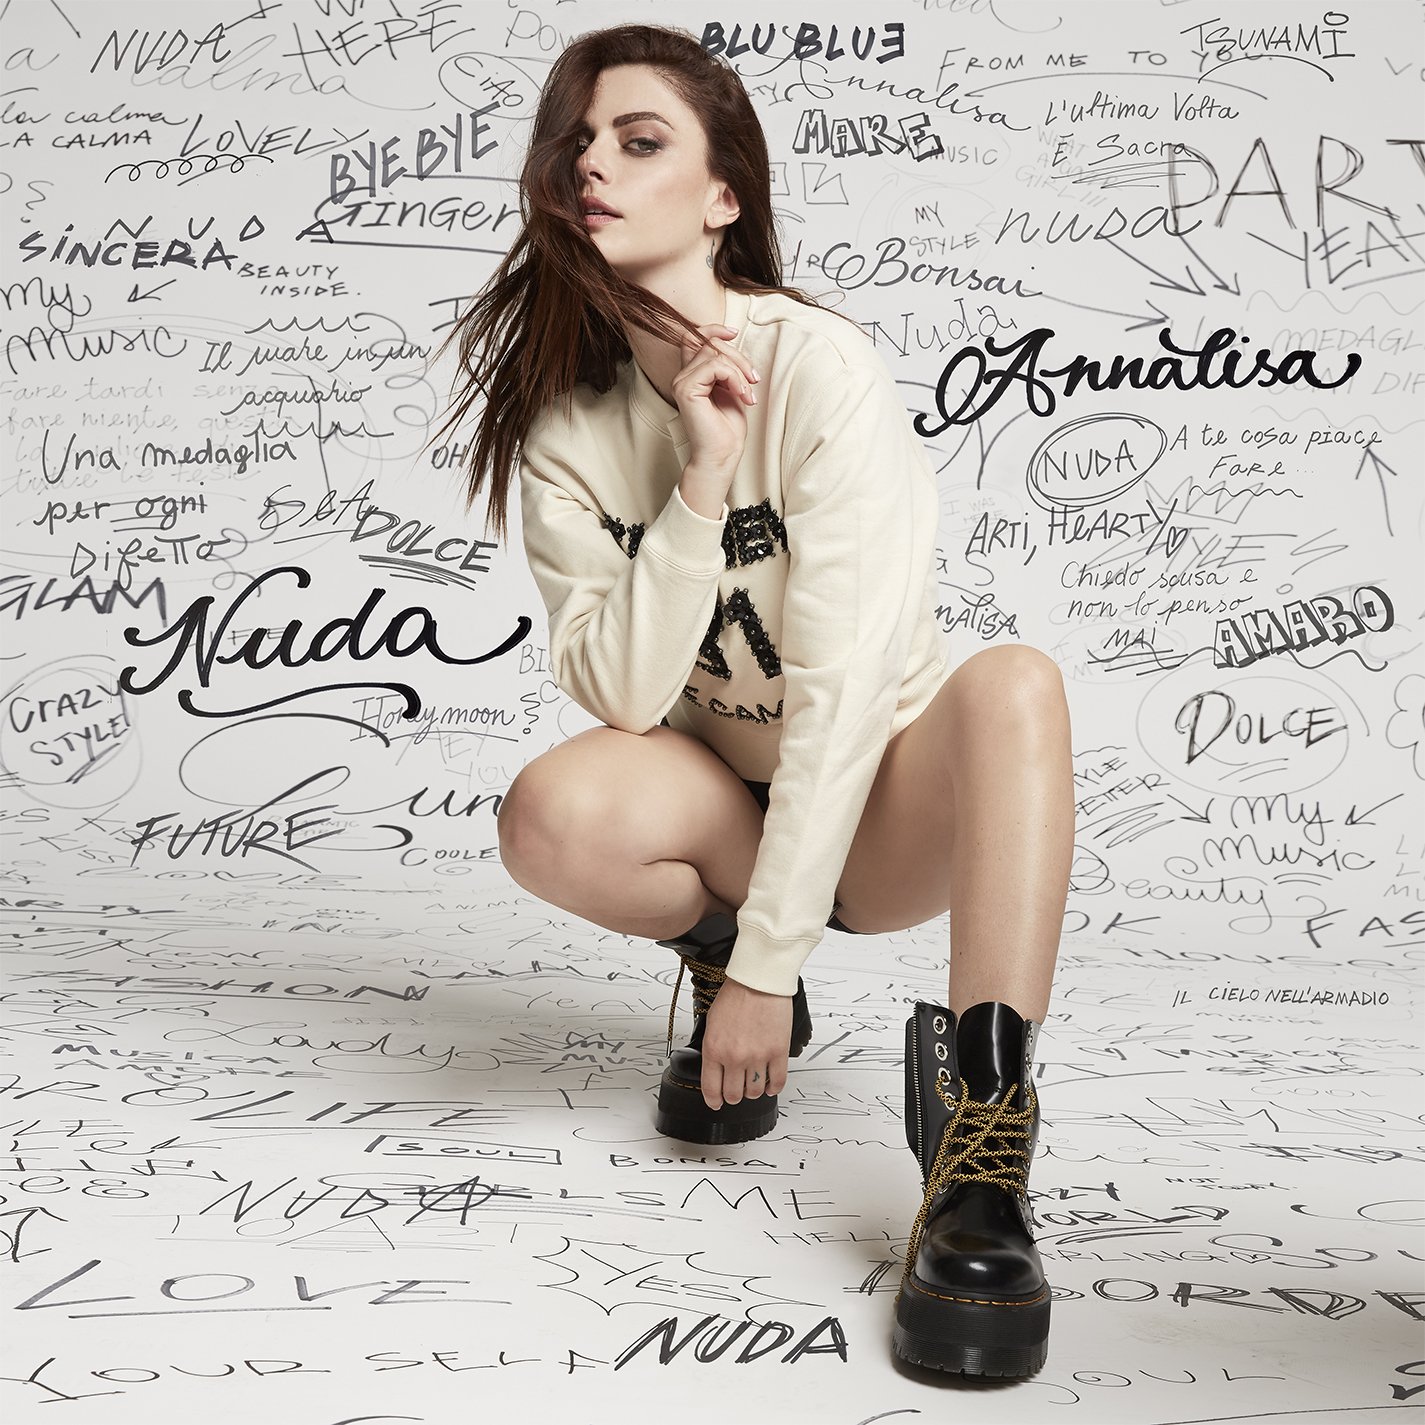 Il 18 settembre esce “Nuda”, il nuovo album di Annalisa